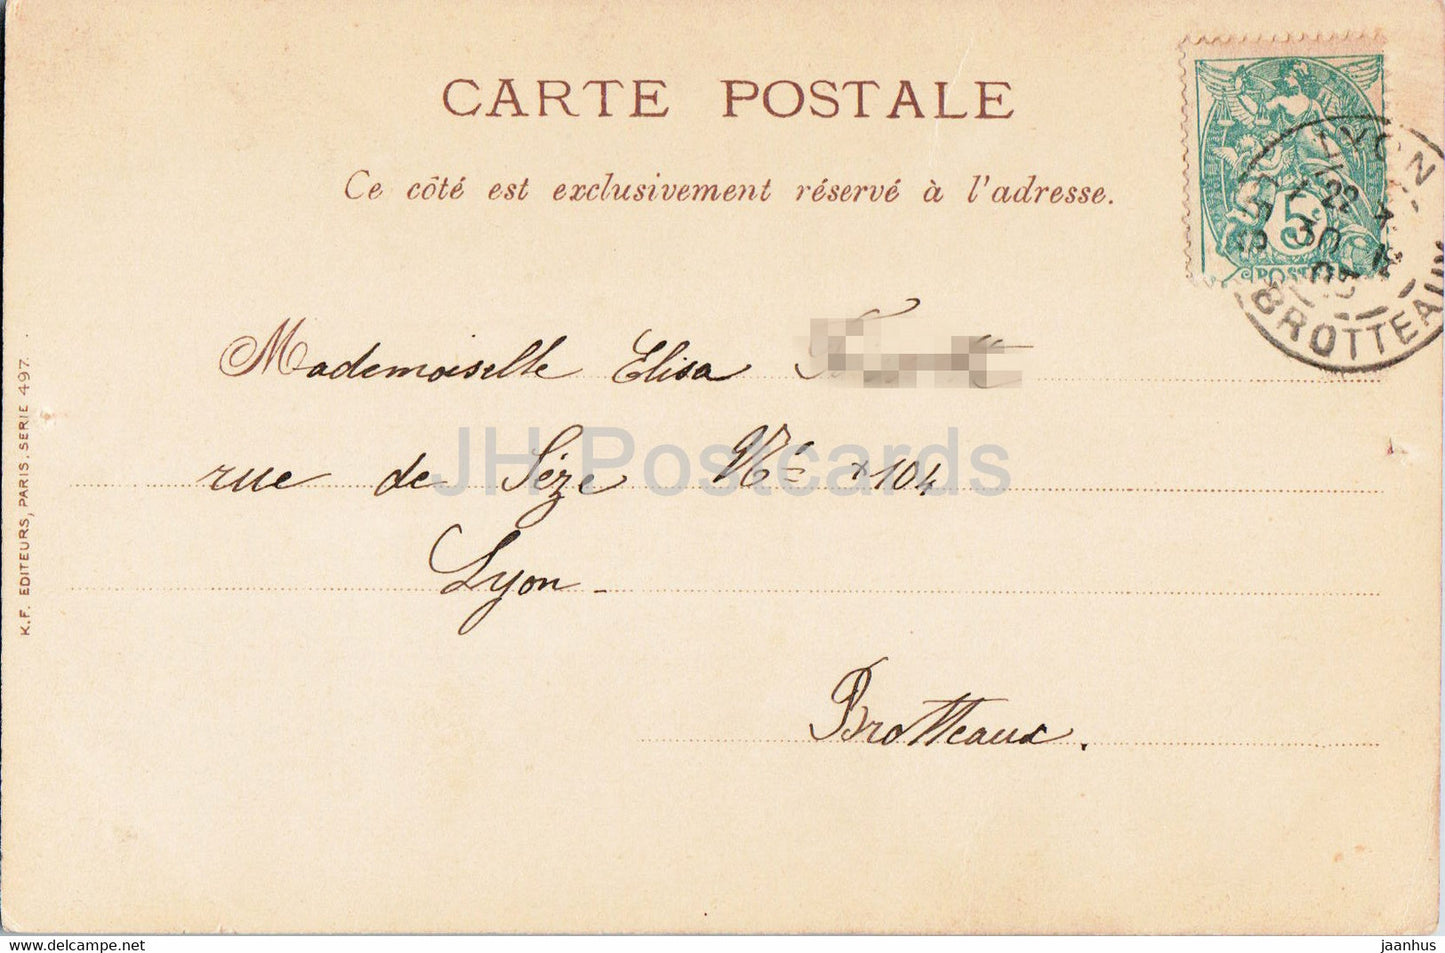 Geburtstagsgrußkarte – Meilleurs voeux – Illustration – blaue Blumen – Serie 497 – alte Postkarte – 1905 – Frankreich – gebraucht